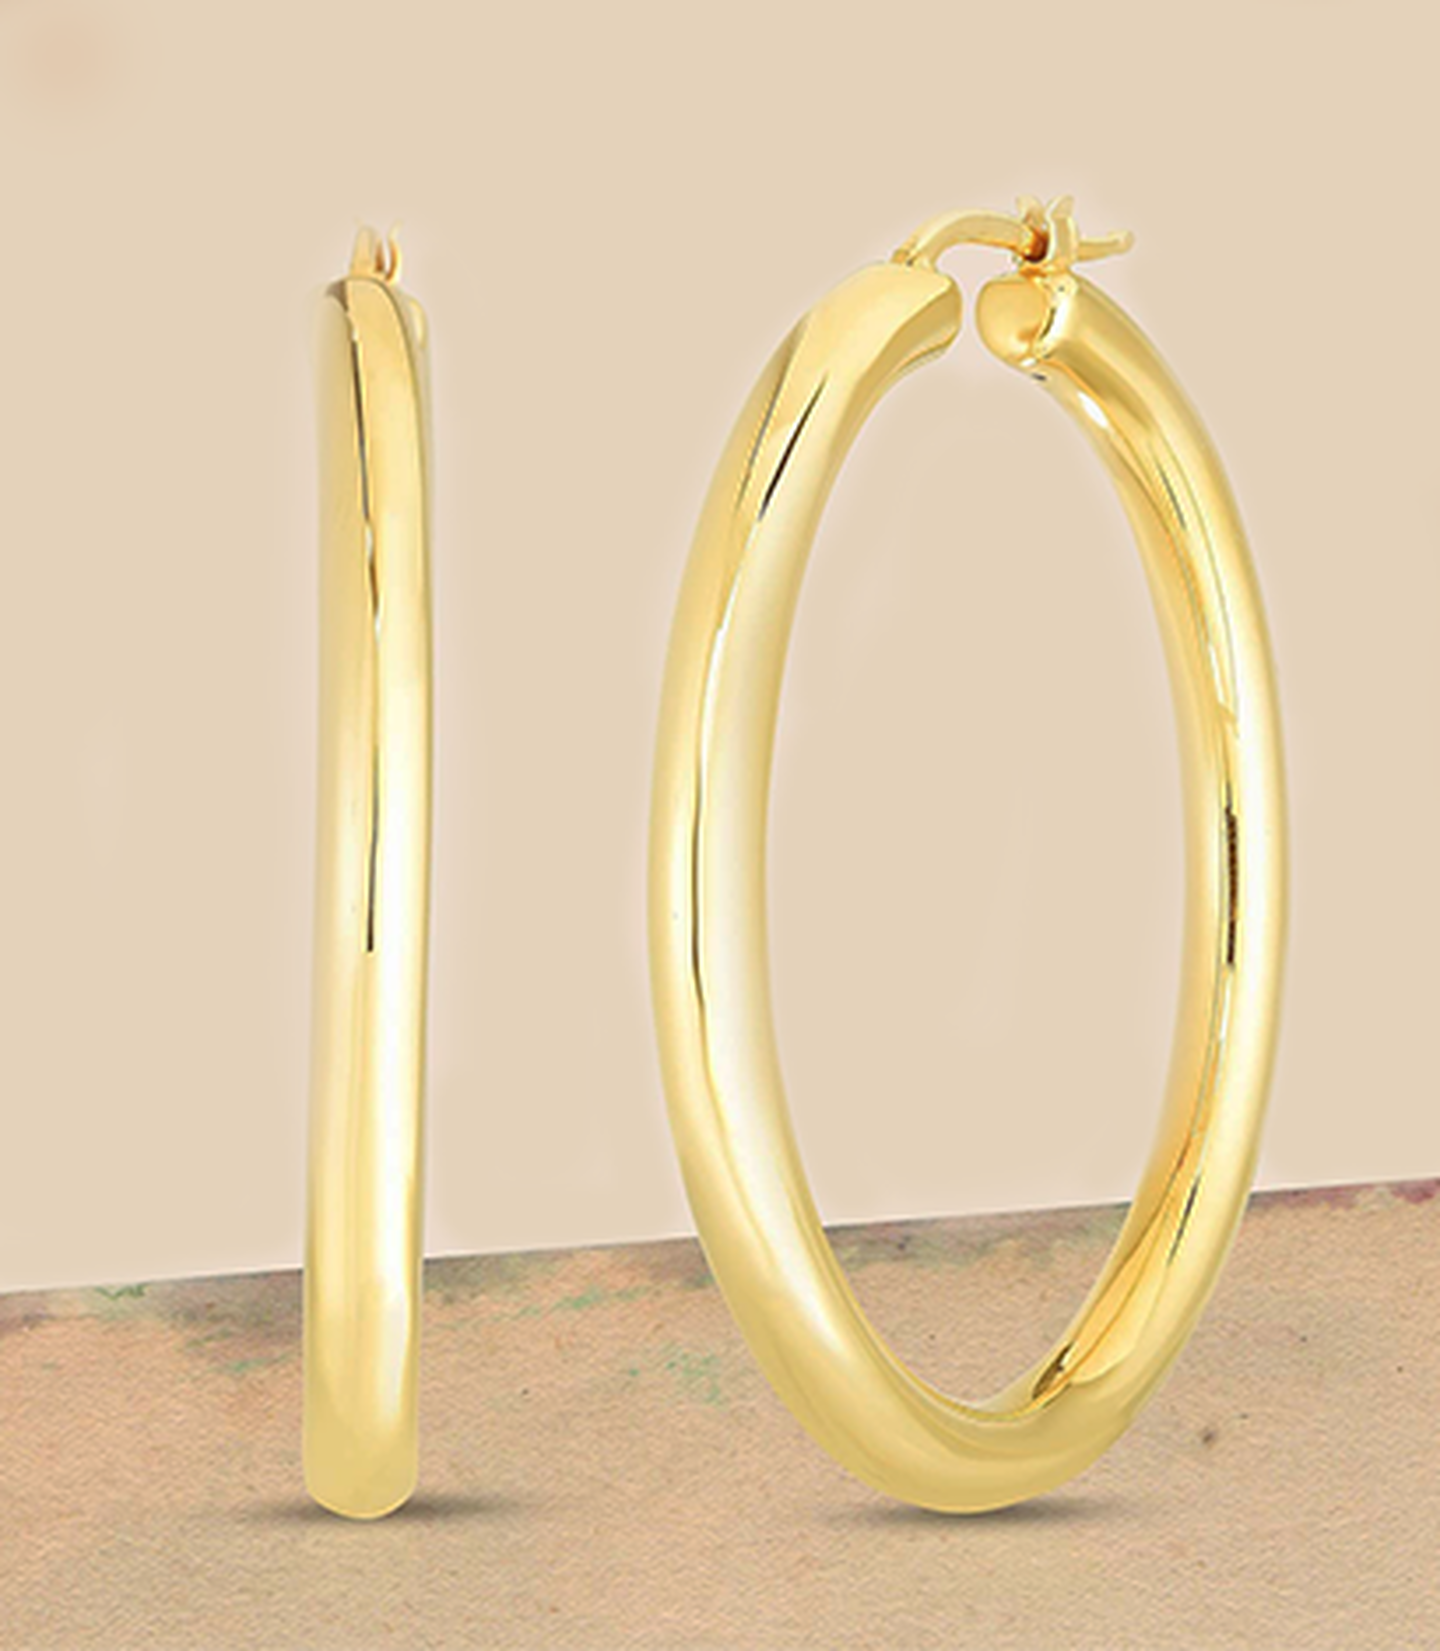 Pair of Roberto Coin gold hoop earrings